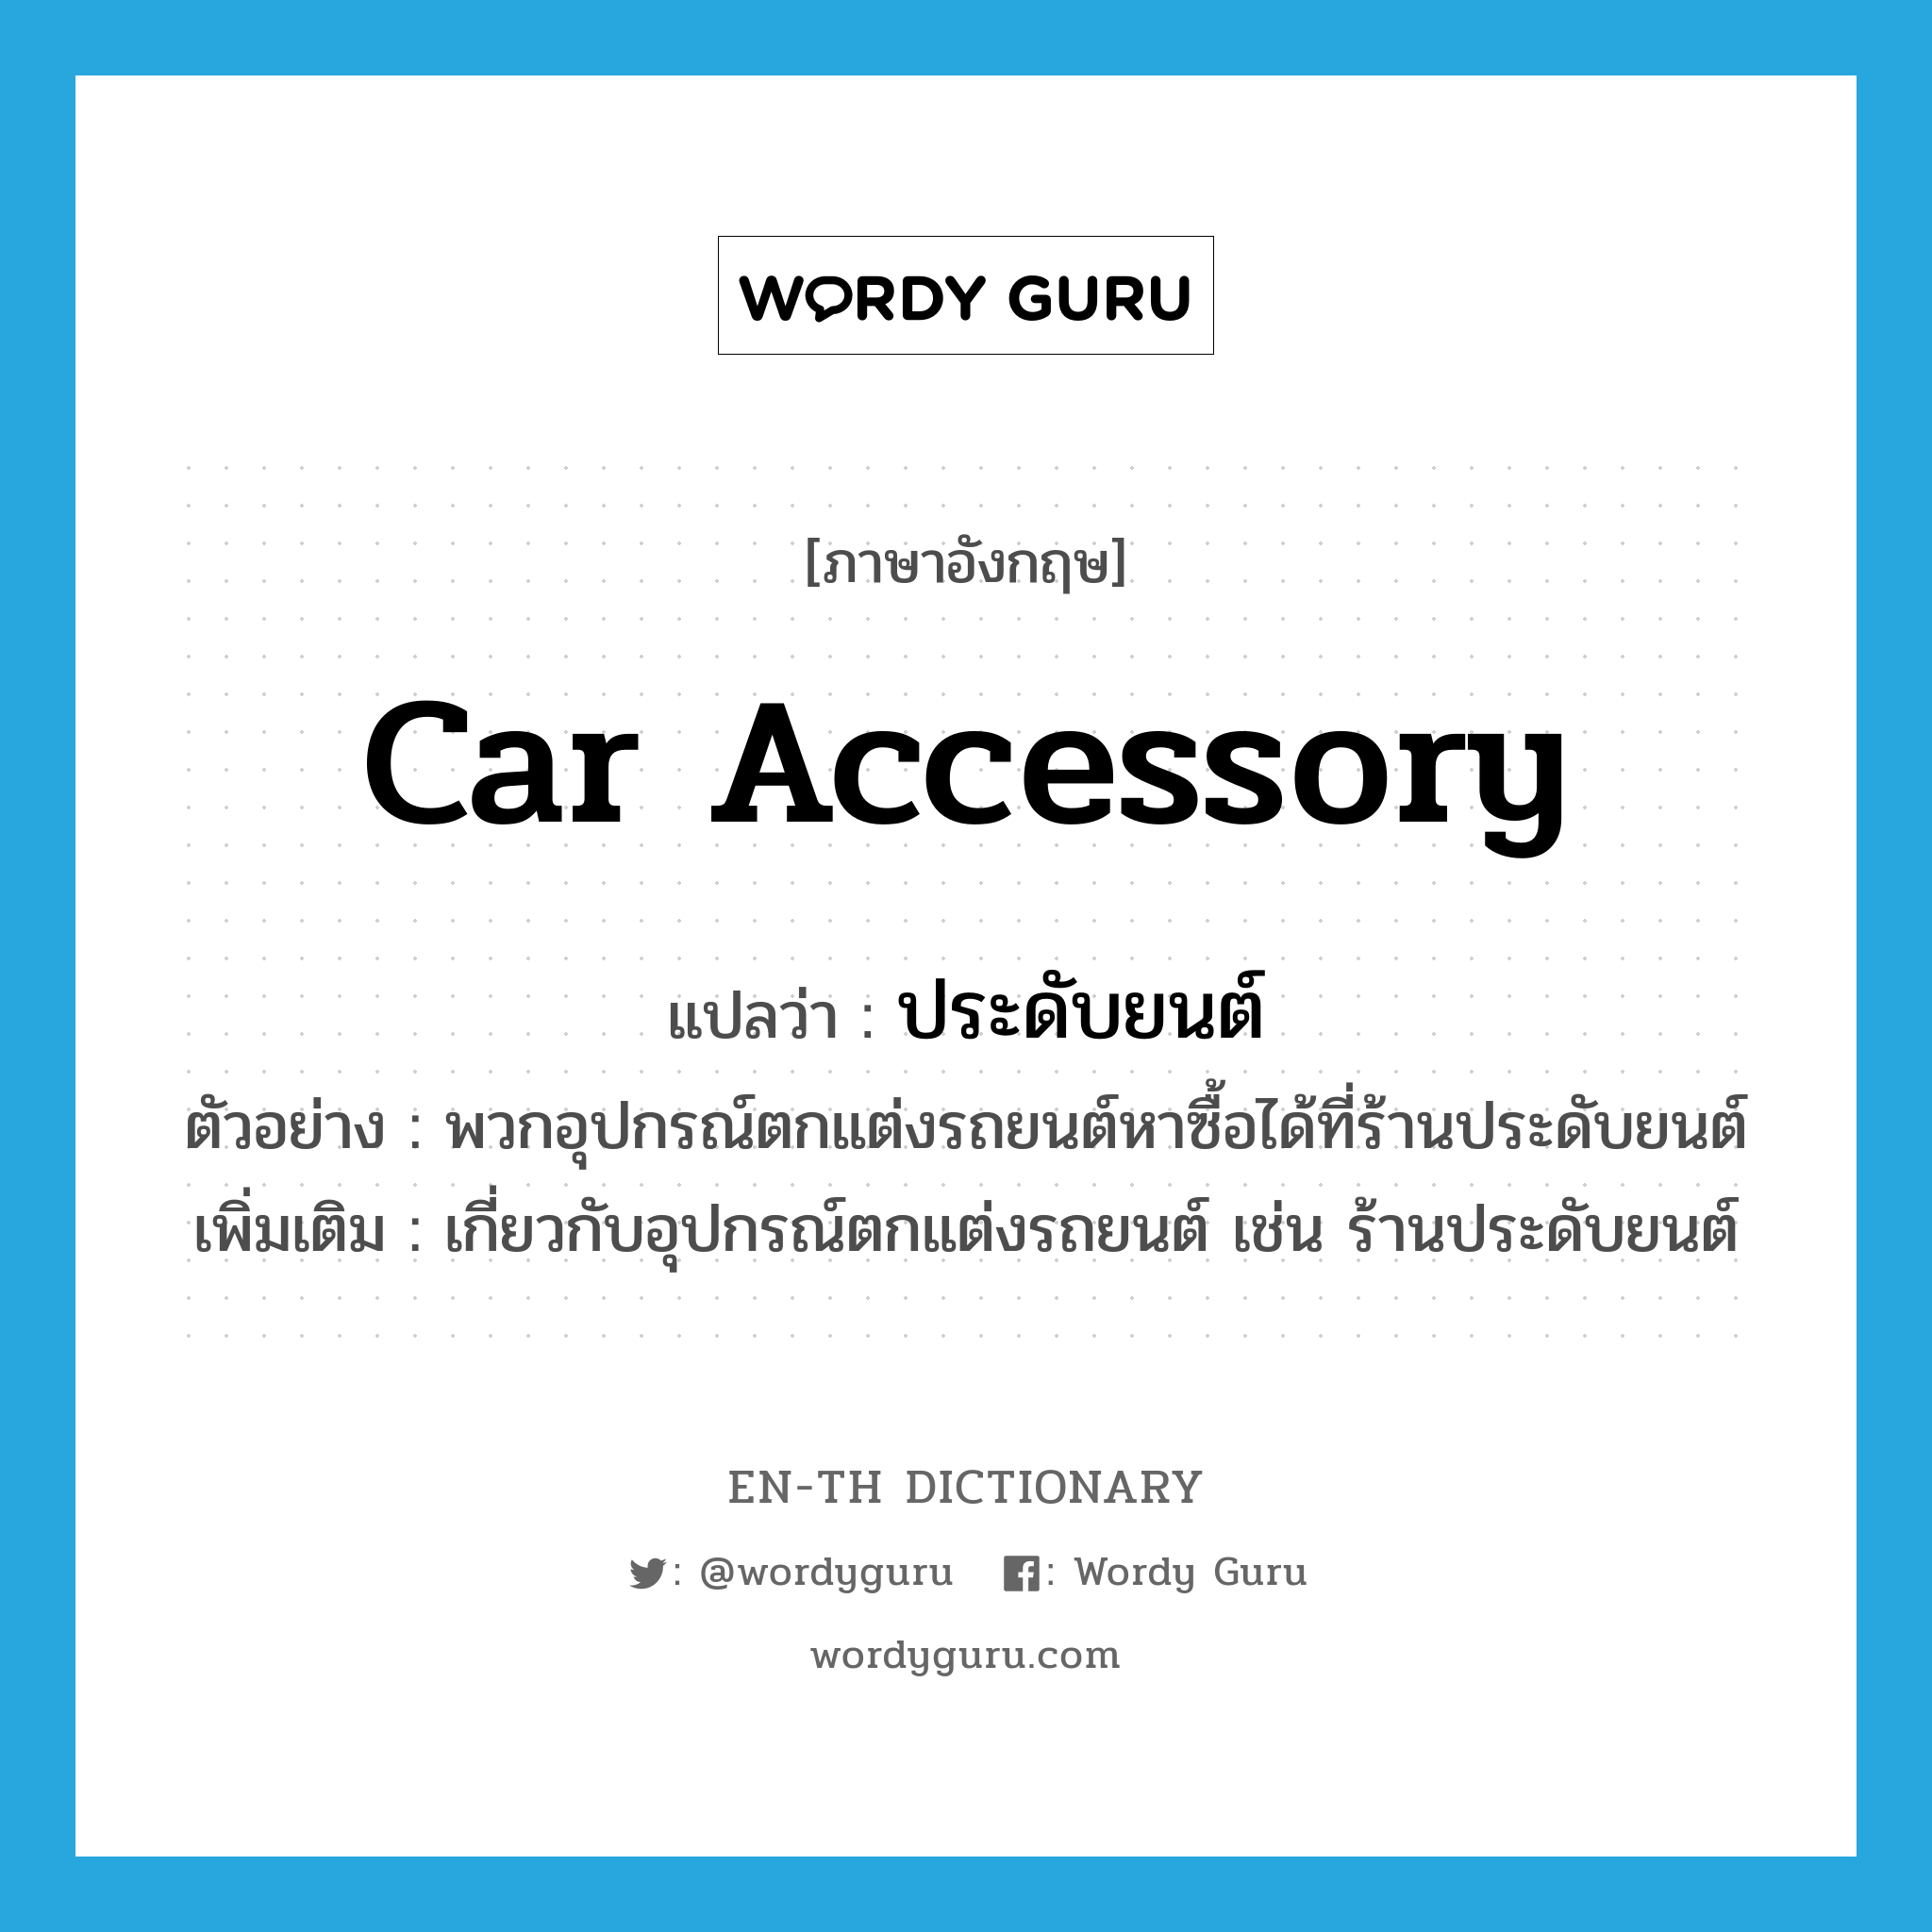 car accessory แปลว่า?, คำศัพท์ภาษาอังกฤษ car accessory แปลว่า ประดับยนต์ ประเภท N ตัวอย่าง พวกอุปกรณ์ตกแต่งรถยนต์หาซื้อได้ที่ร้านประดับยนต์ เพิ่มเติม เกี่ยวกับอุปกรณ์ตกแต่งรถยนต์ เช่น ร้านประดับยนต์ หมวด N